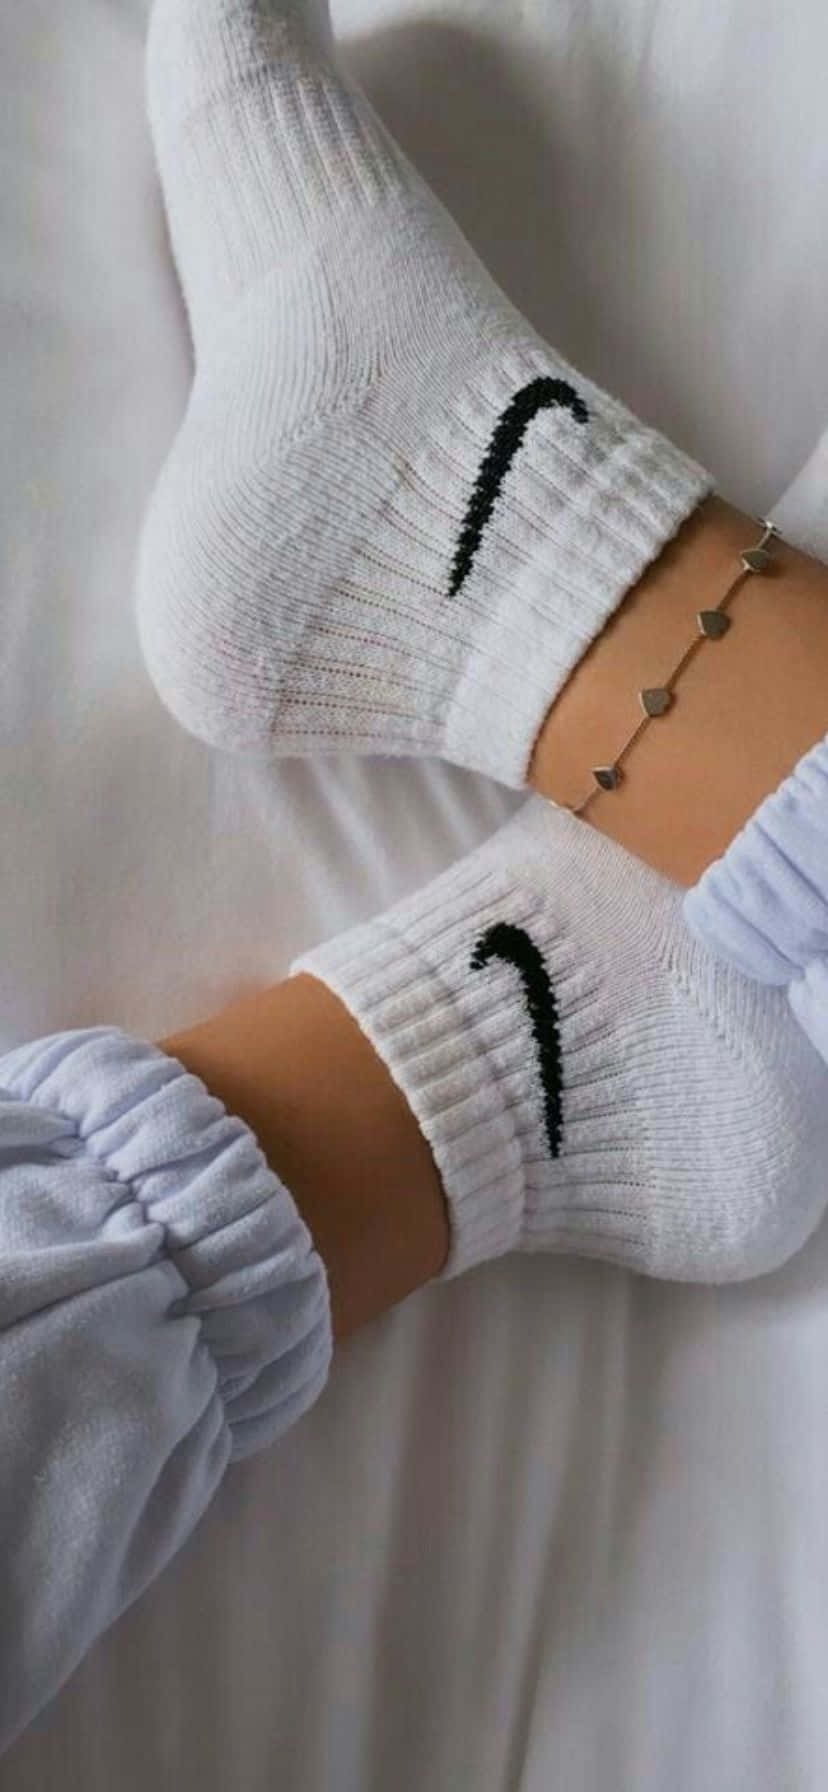 White Sports Socks Casual Wear Wallpaper